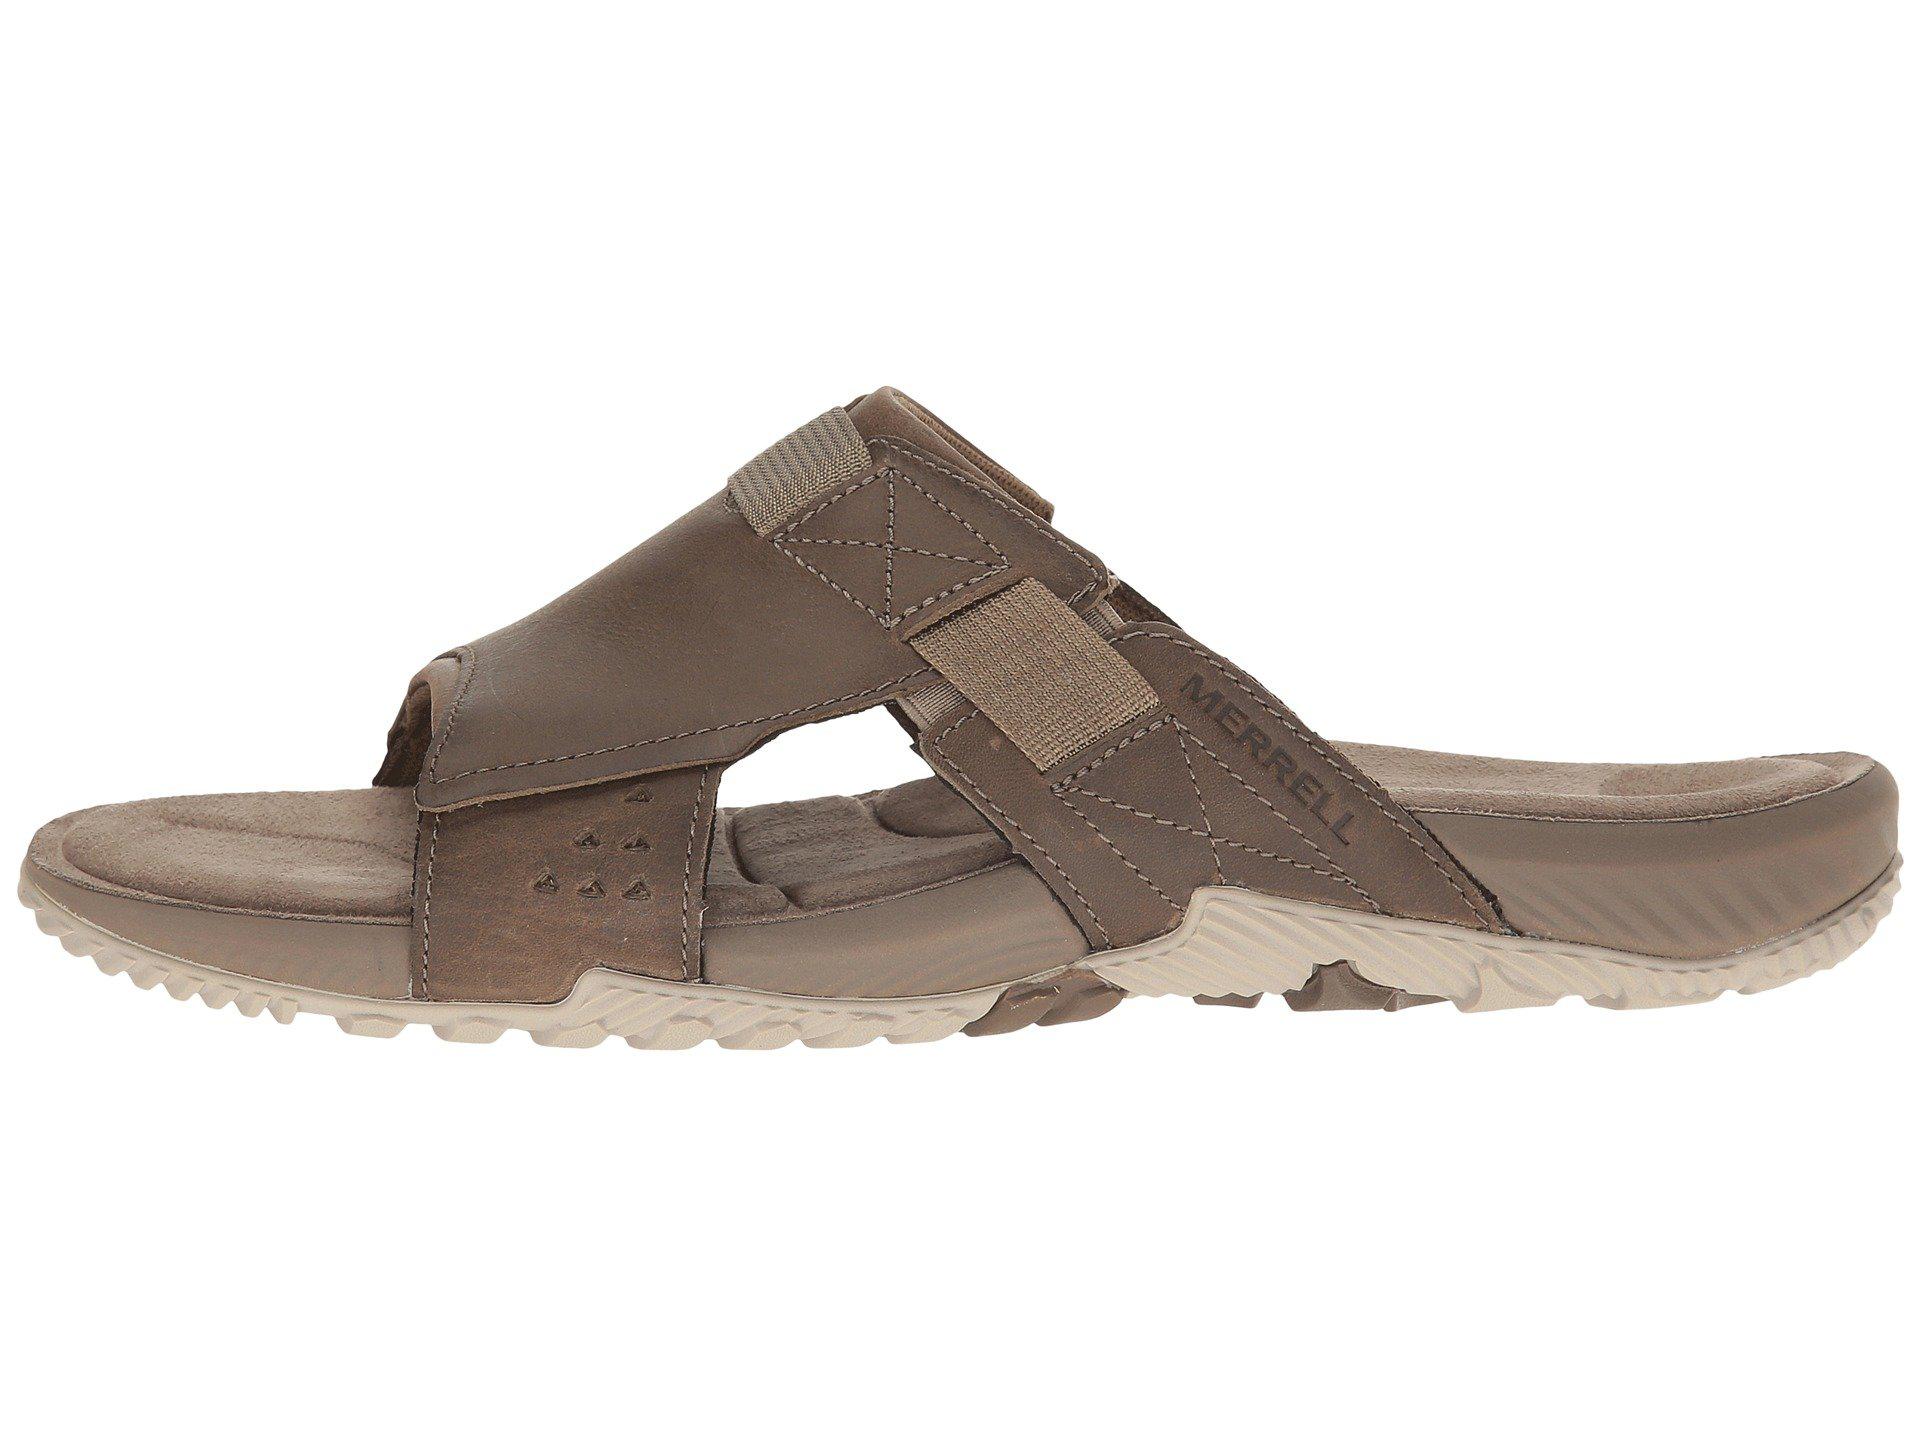 Merrell Leather Terrant Slide Open Toe Sandals in Brown for Men - Lyst